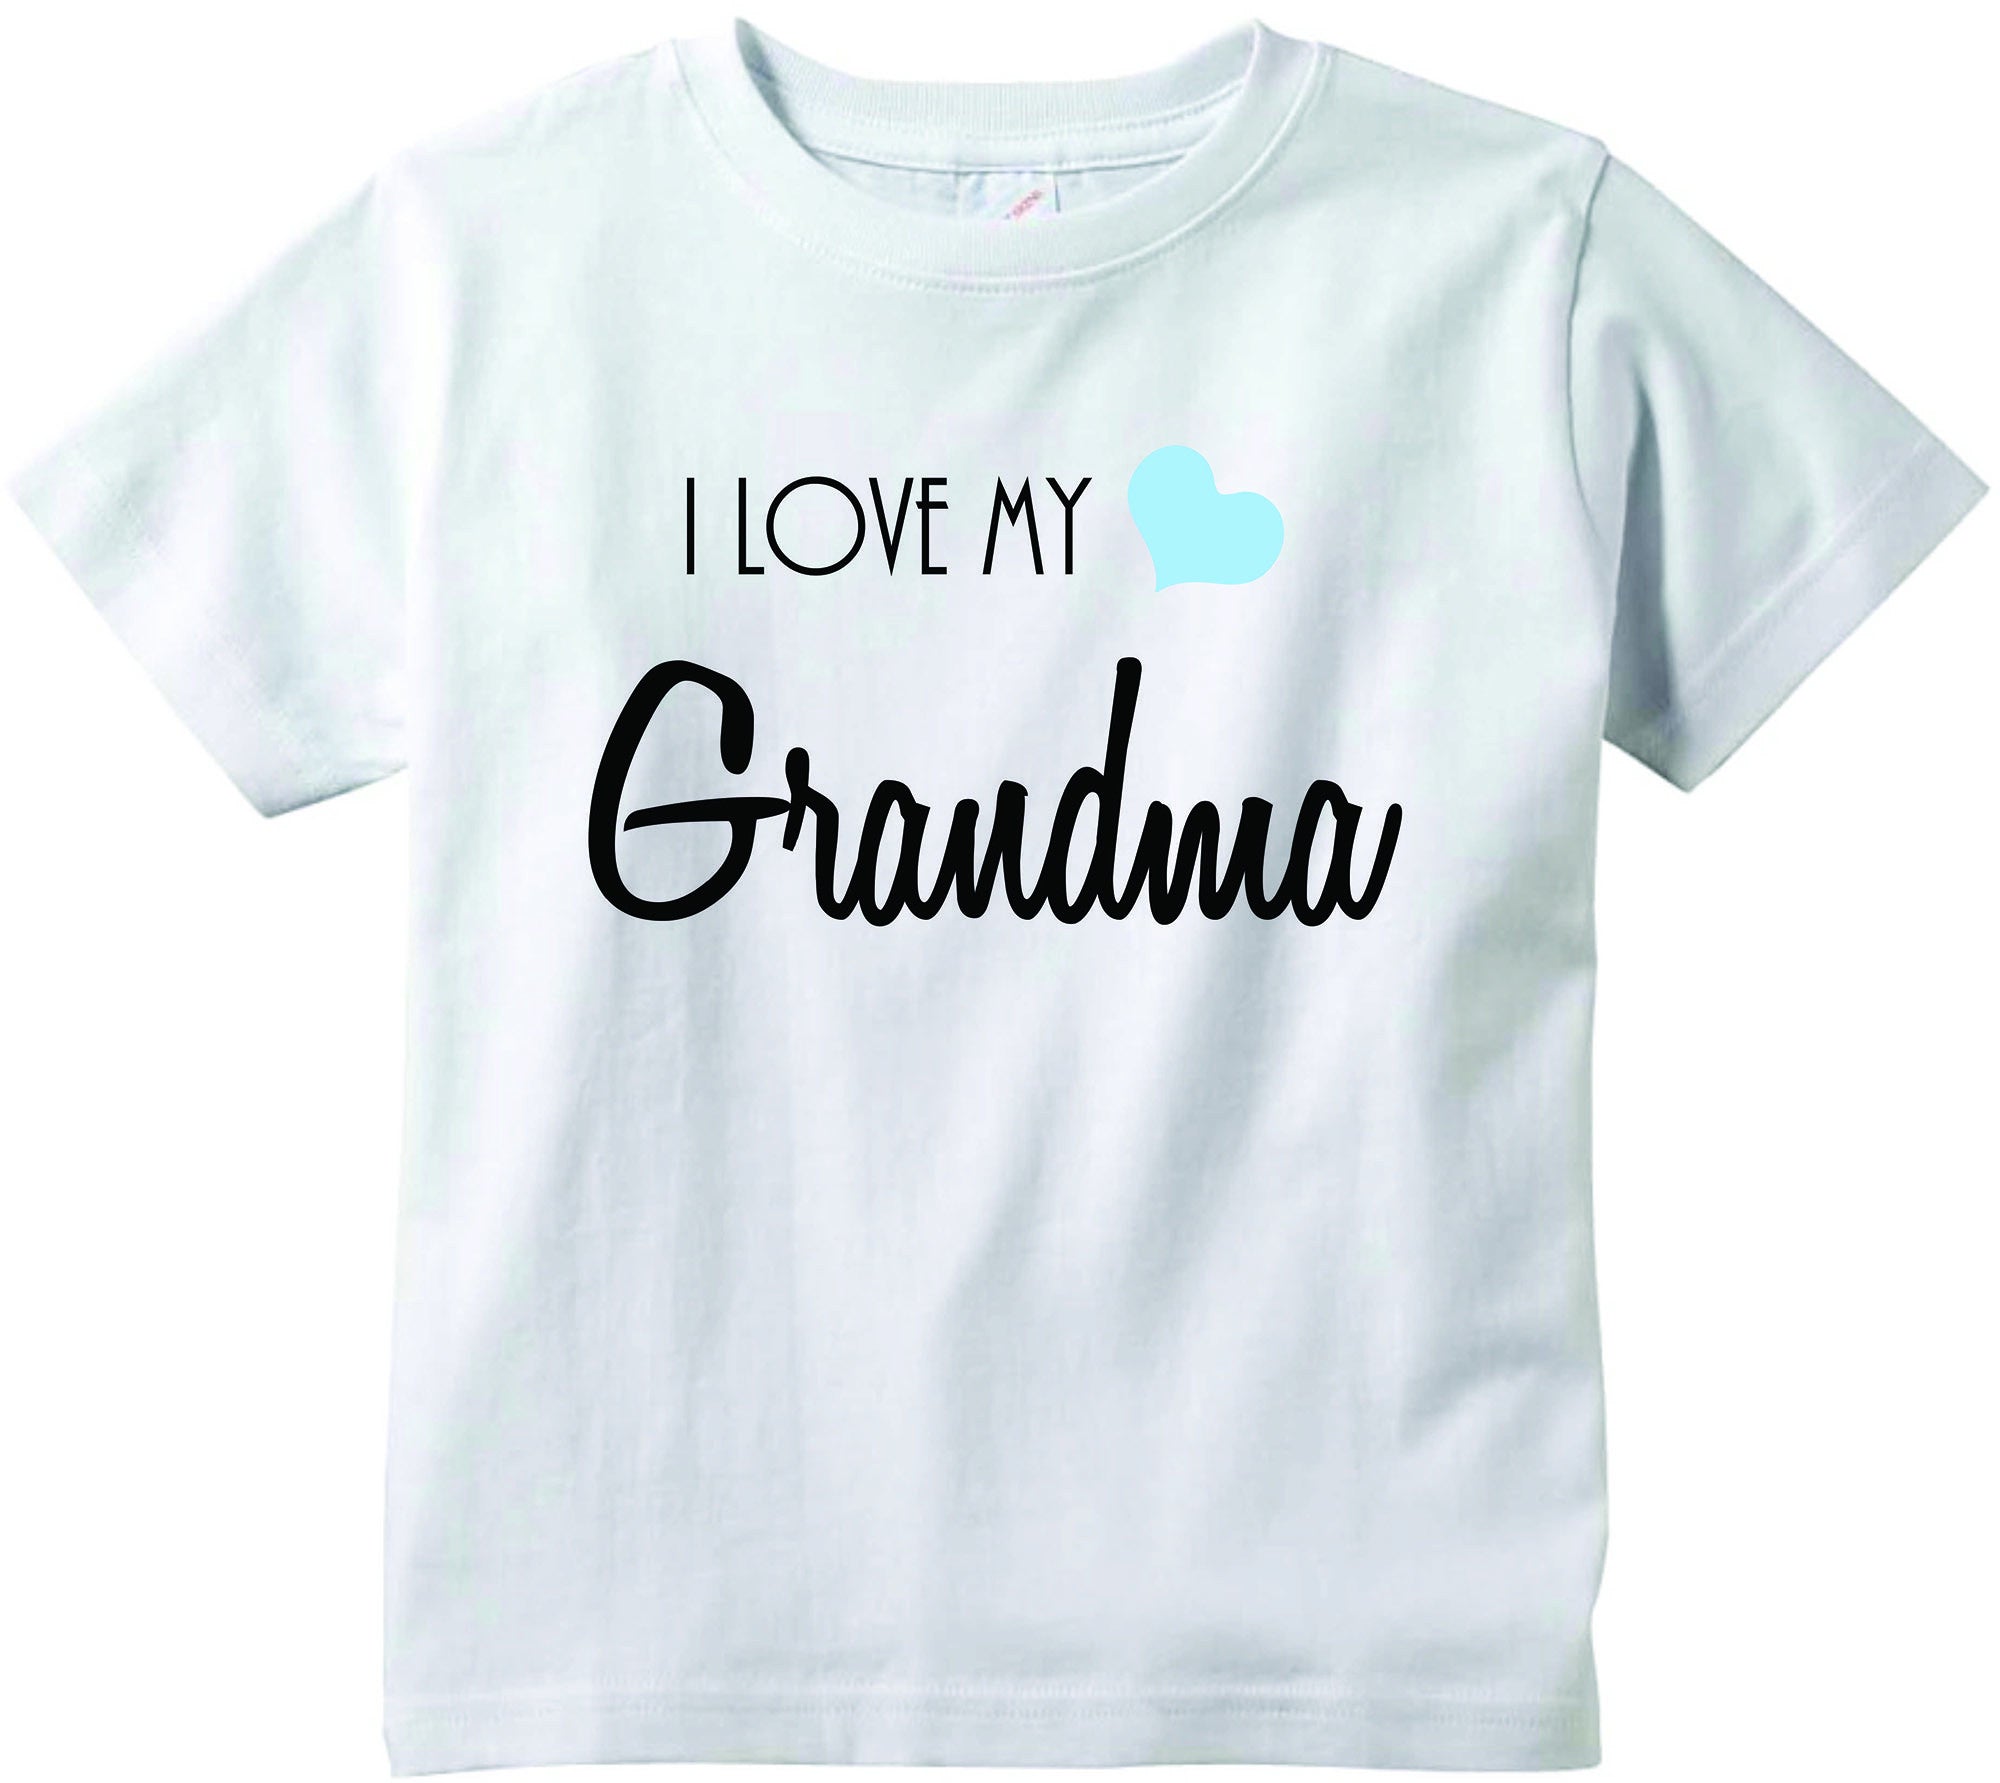 grandma baby boy clothes